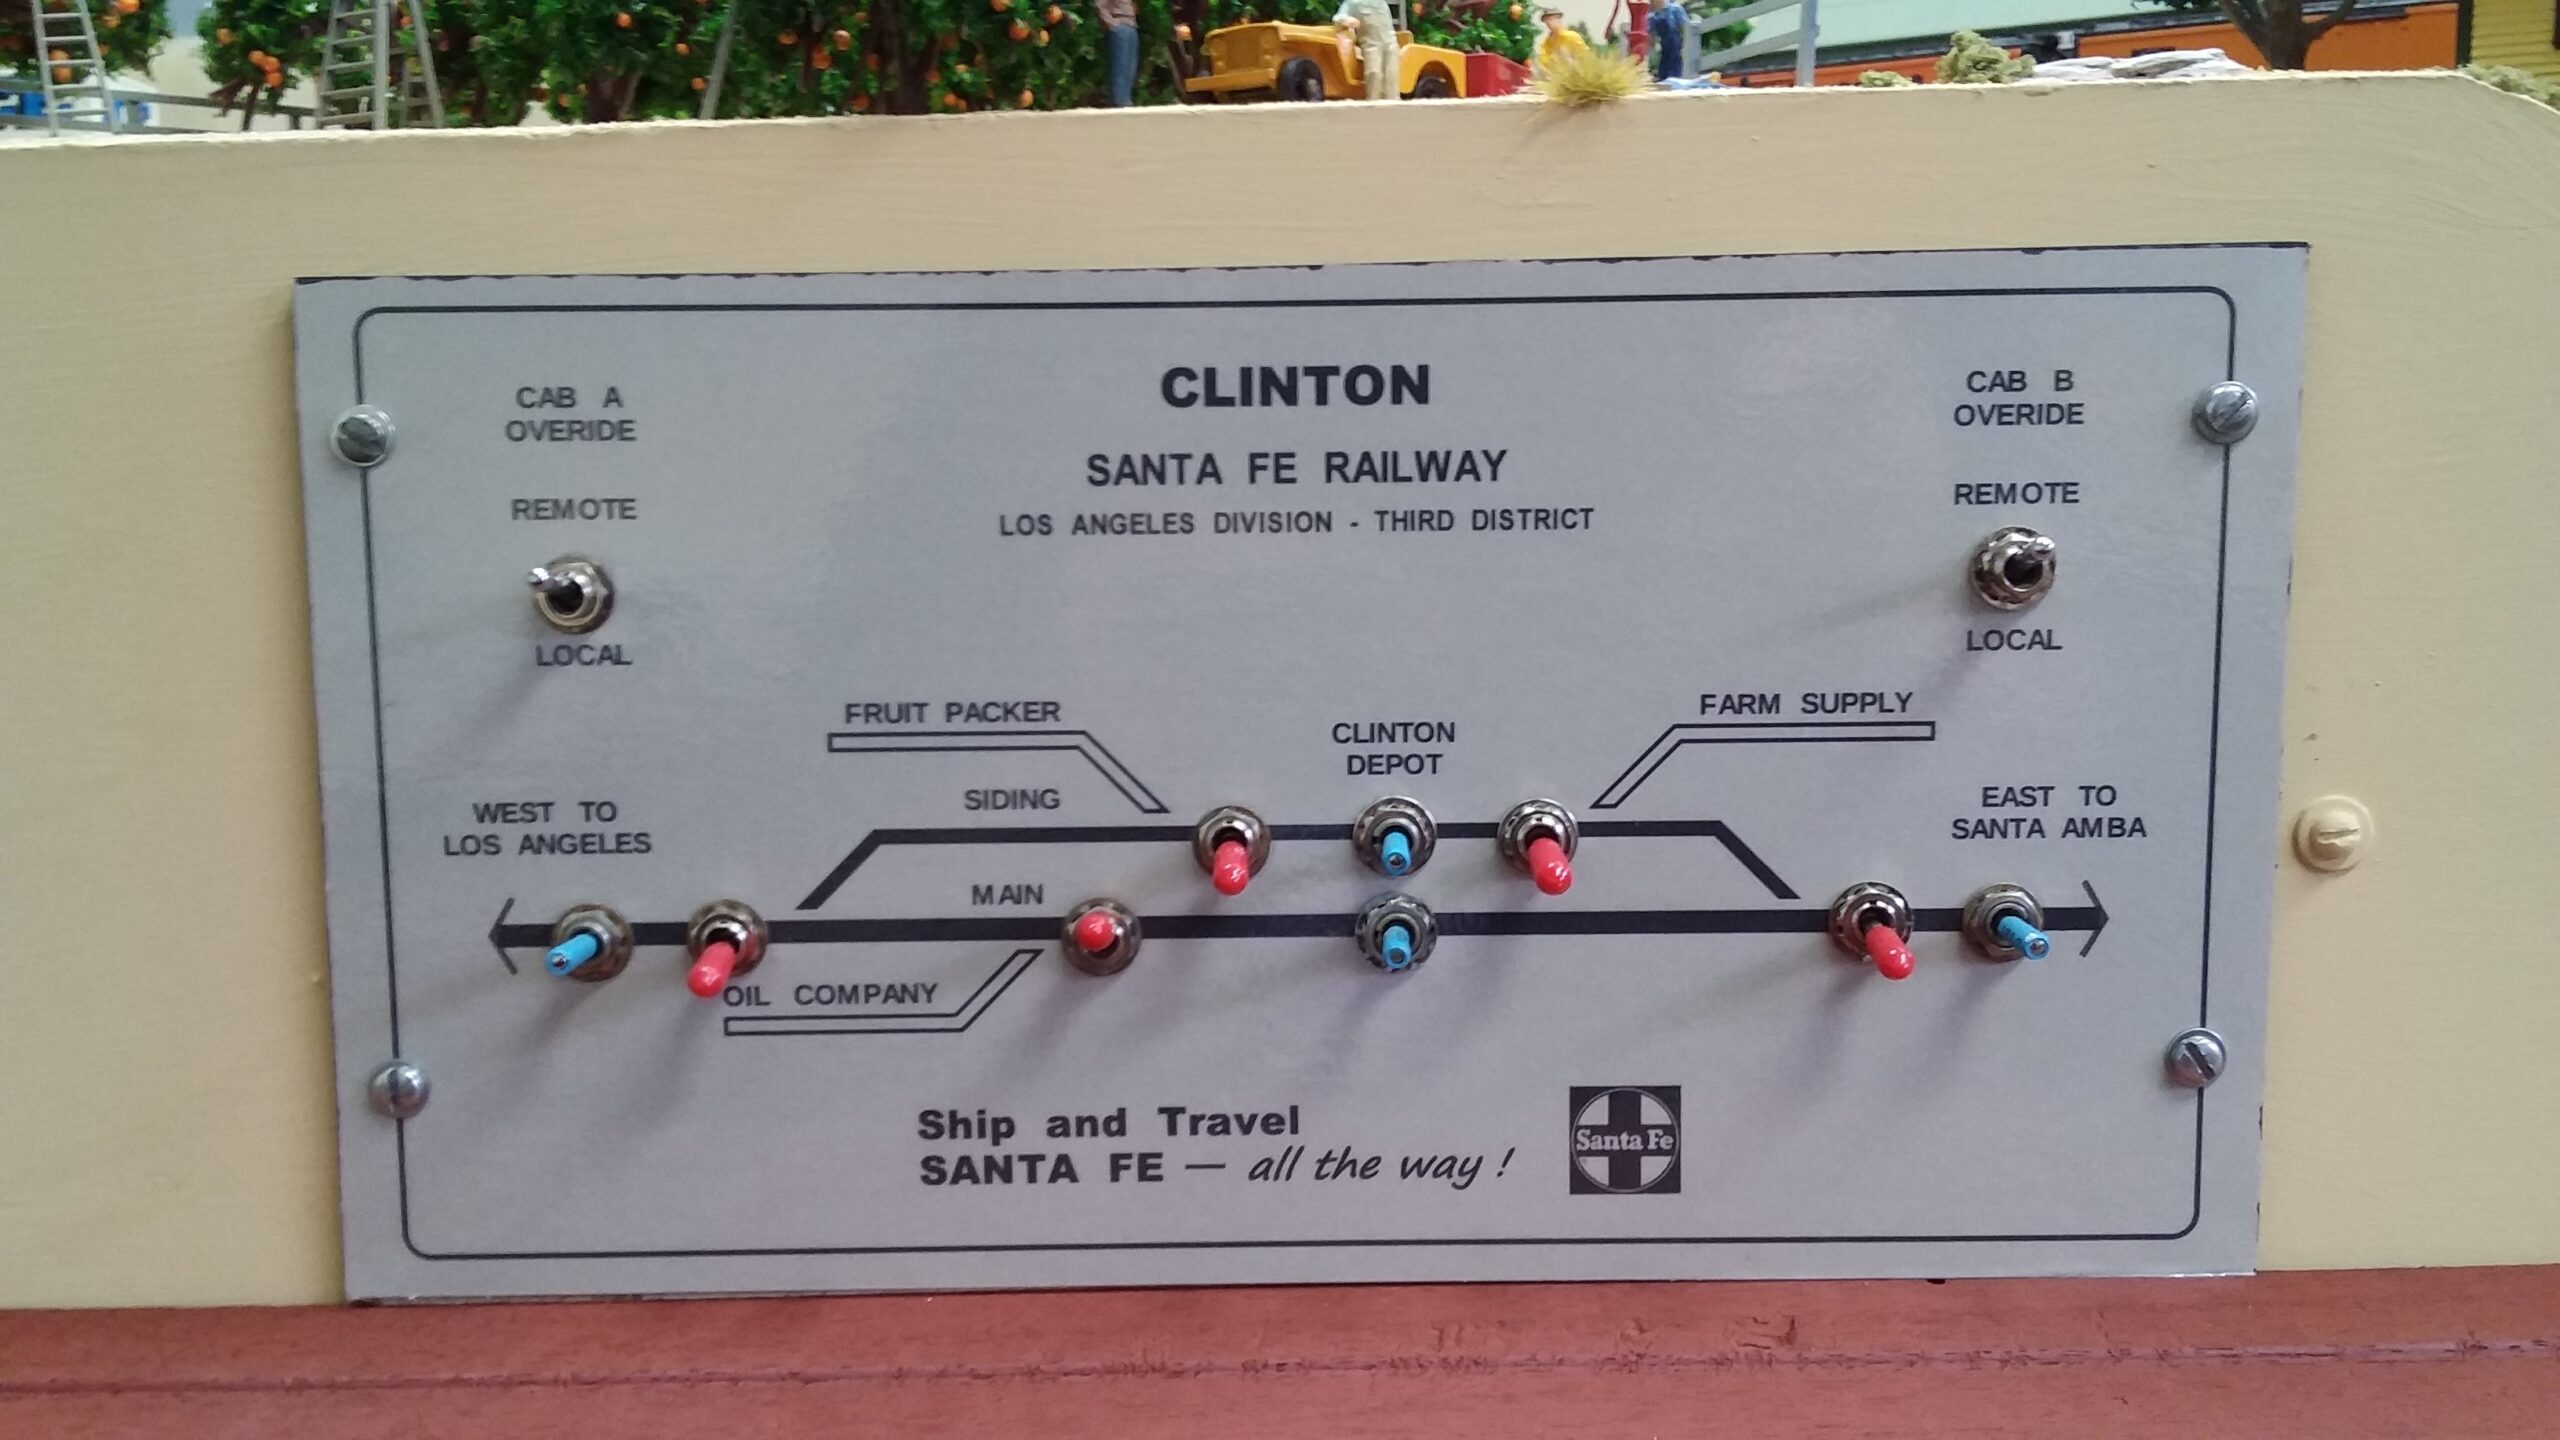 Clinton control panel|Santa Fe Railway, Los Angeles Division